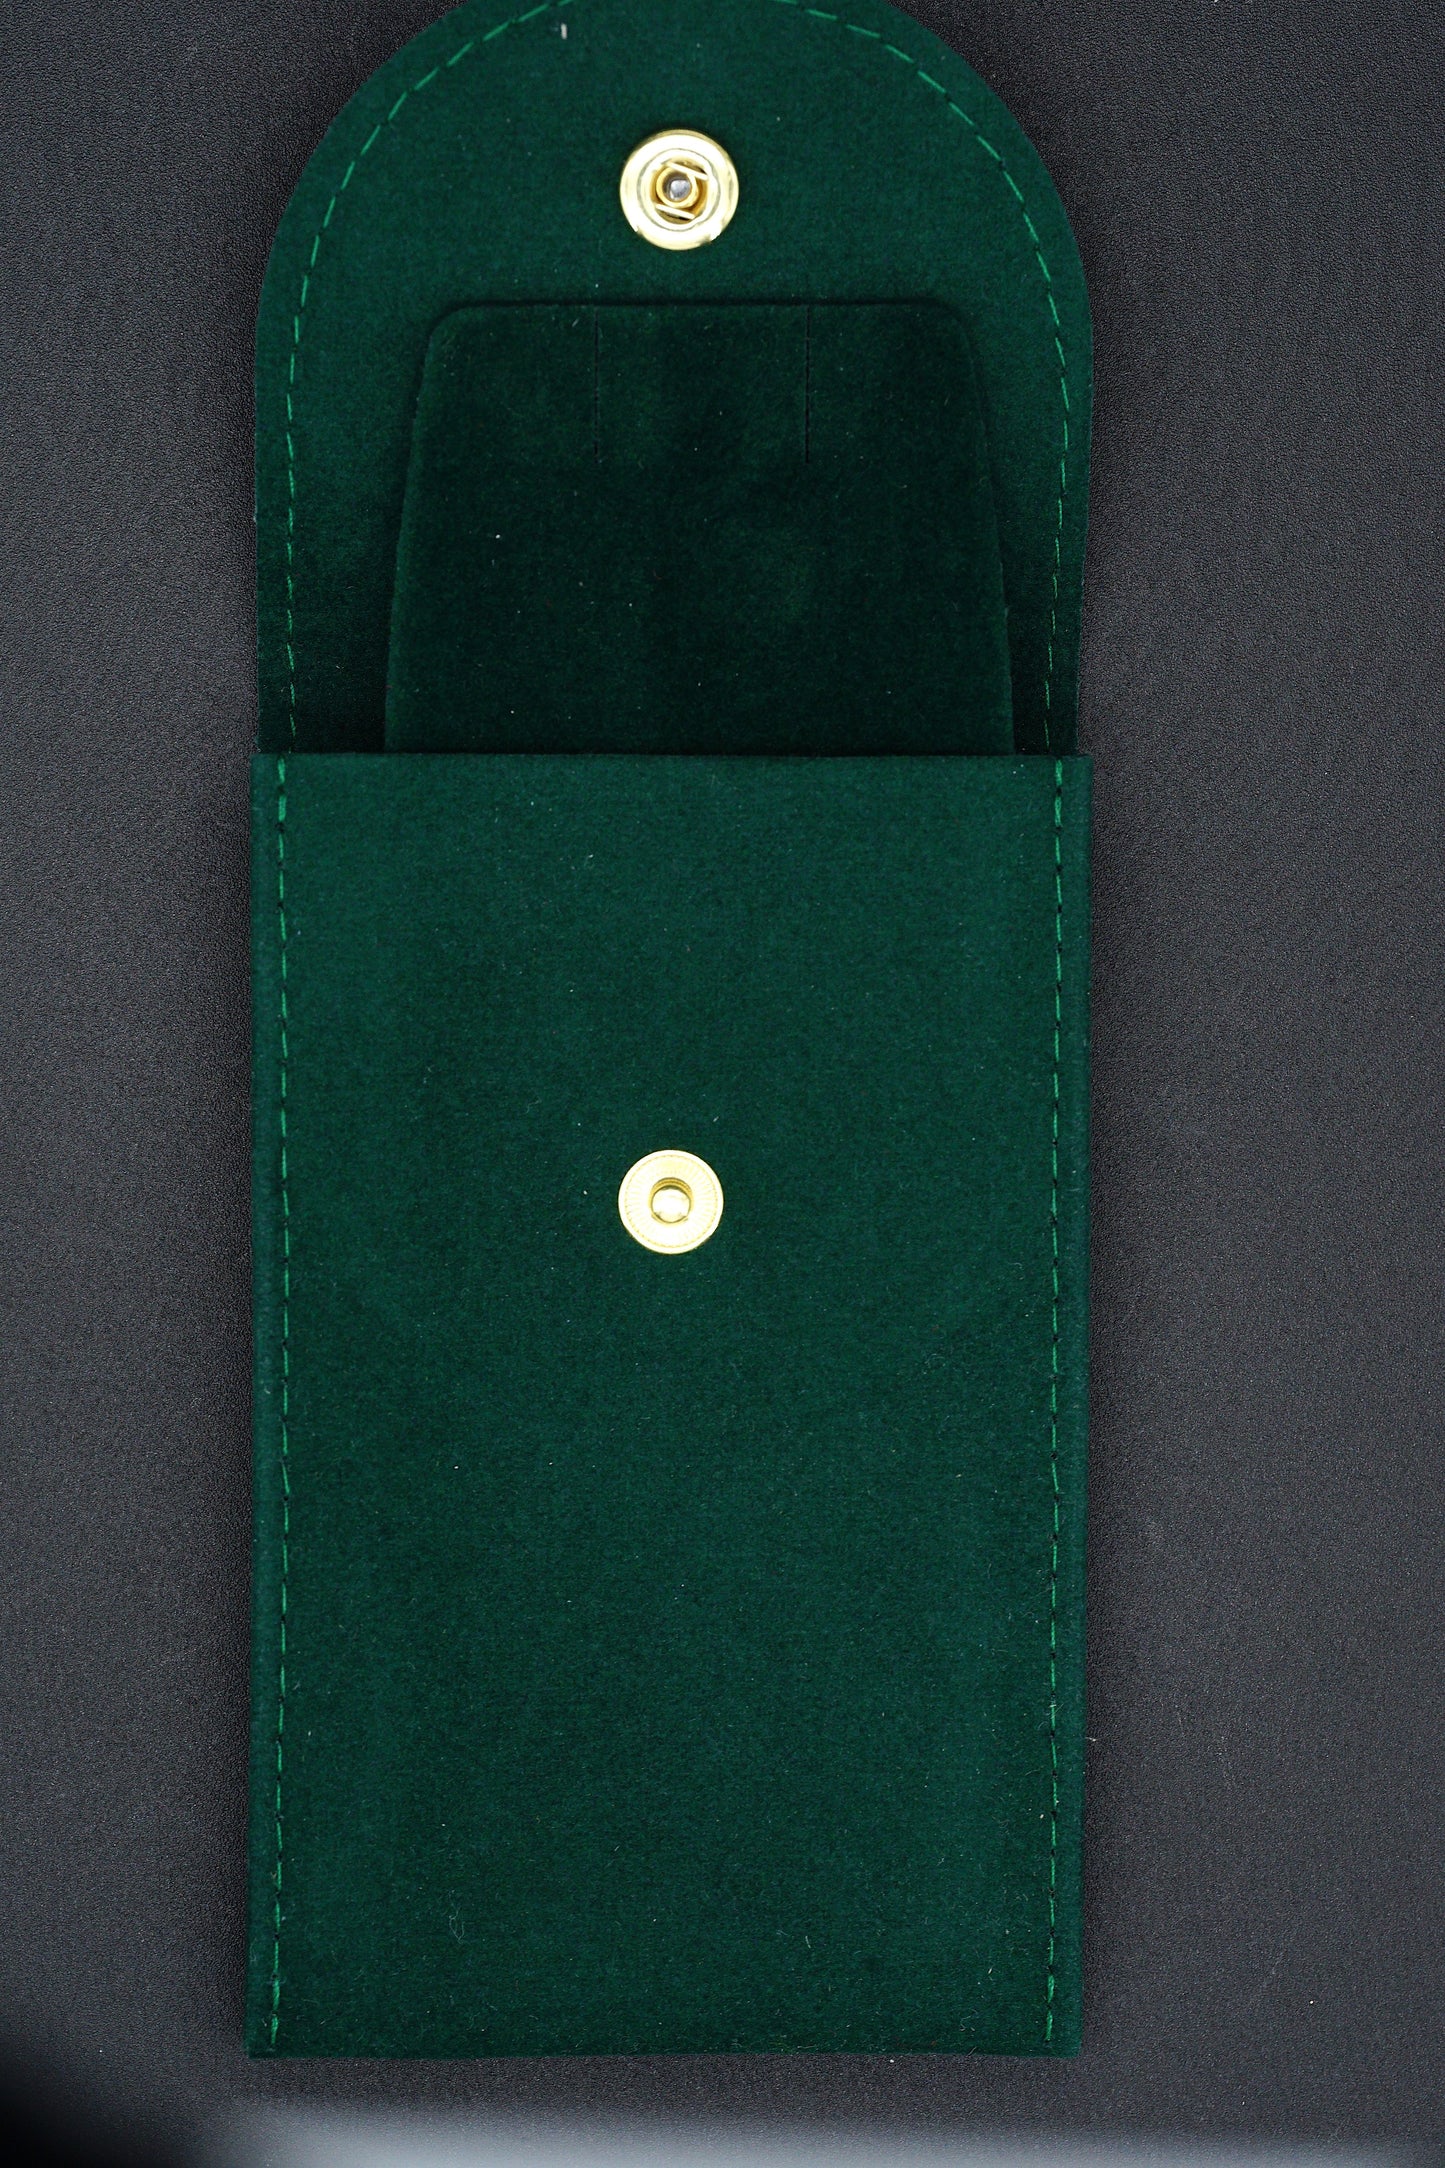 Rolex Green Puoch